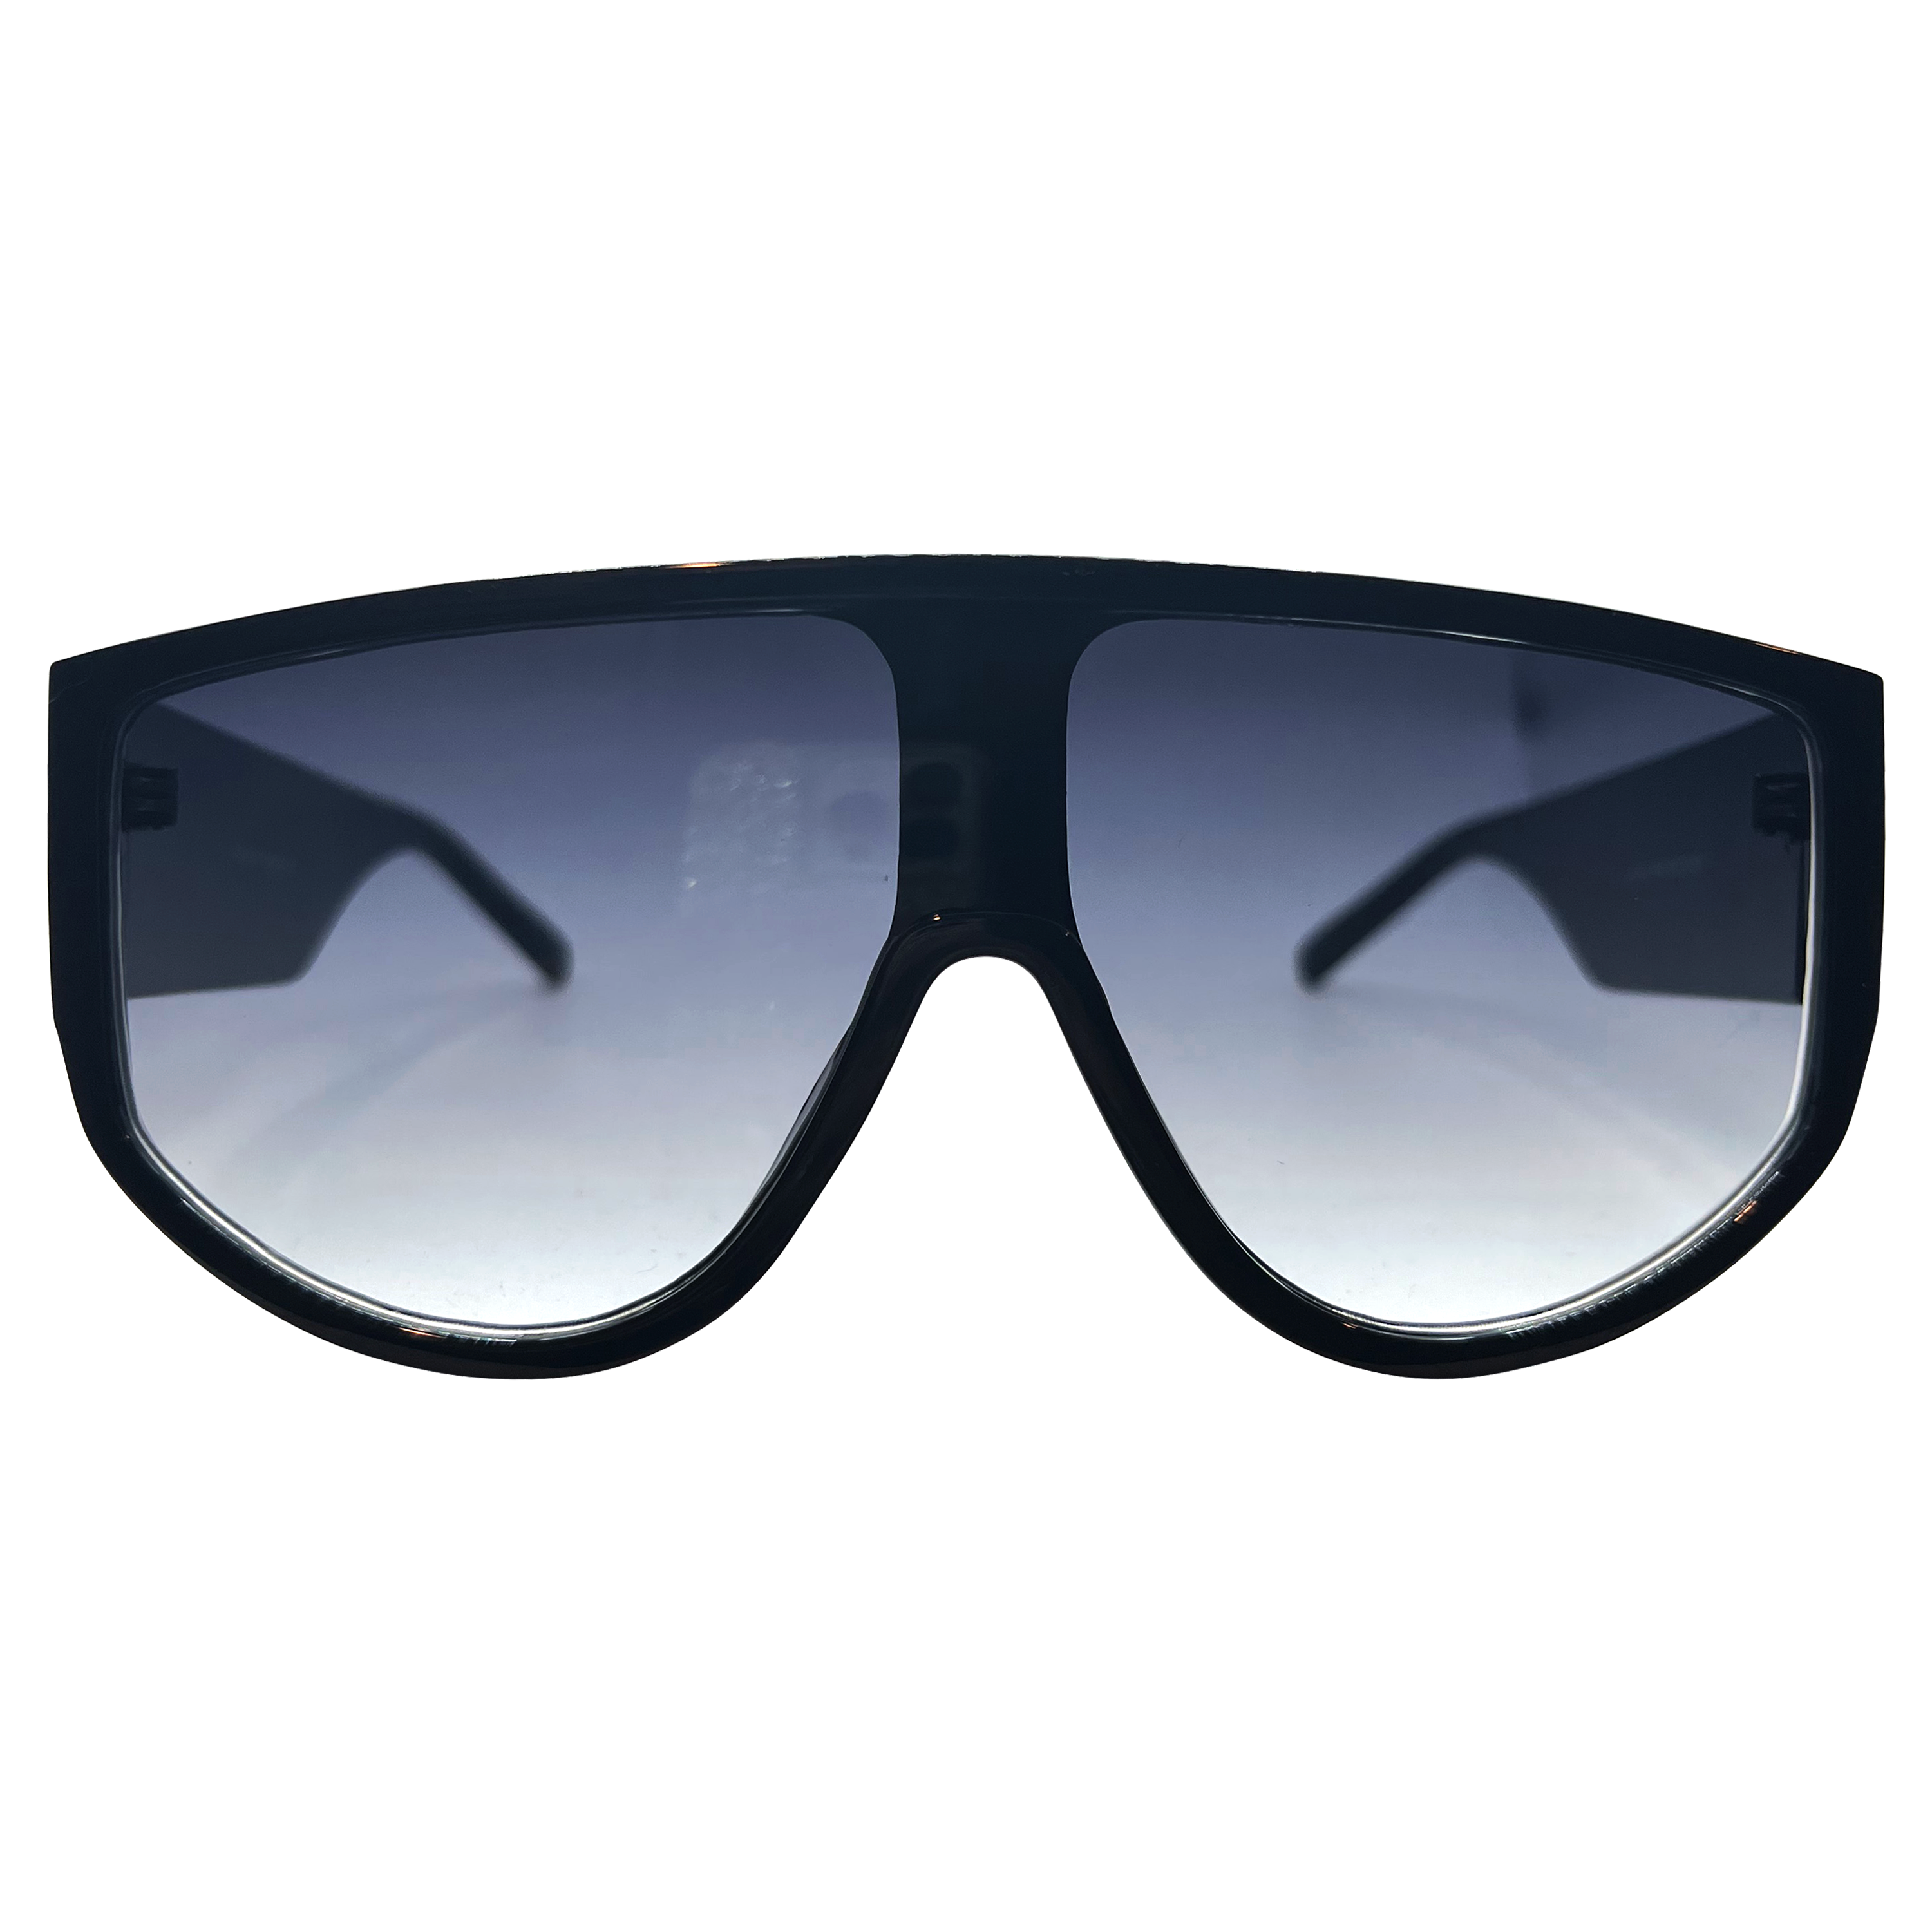 SMOKED OUT Black/Smoke Shield Sunglasses